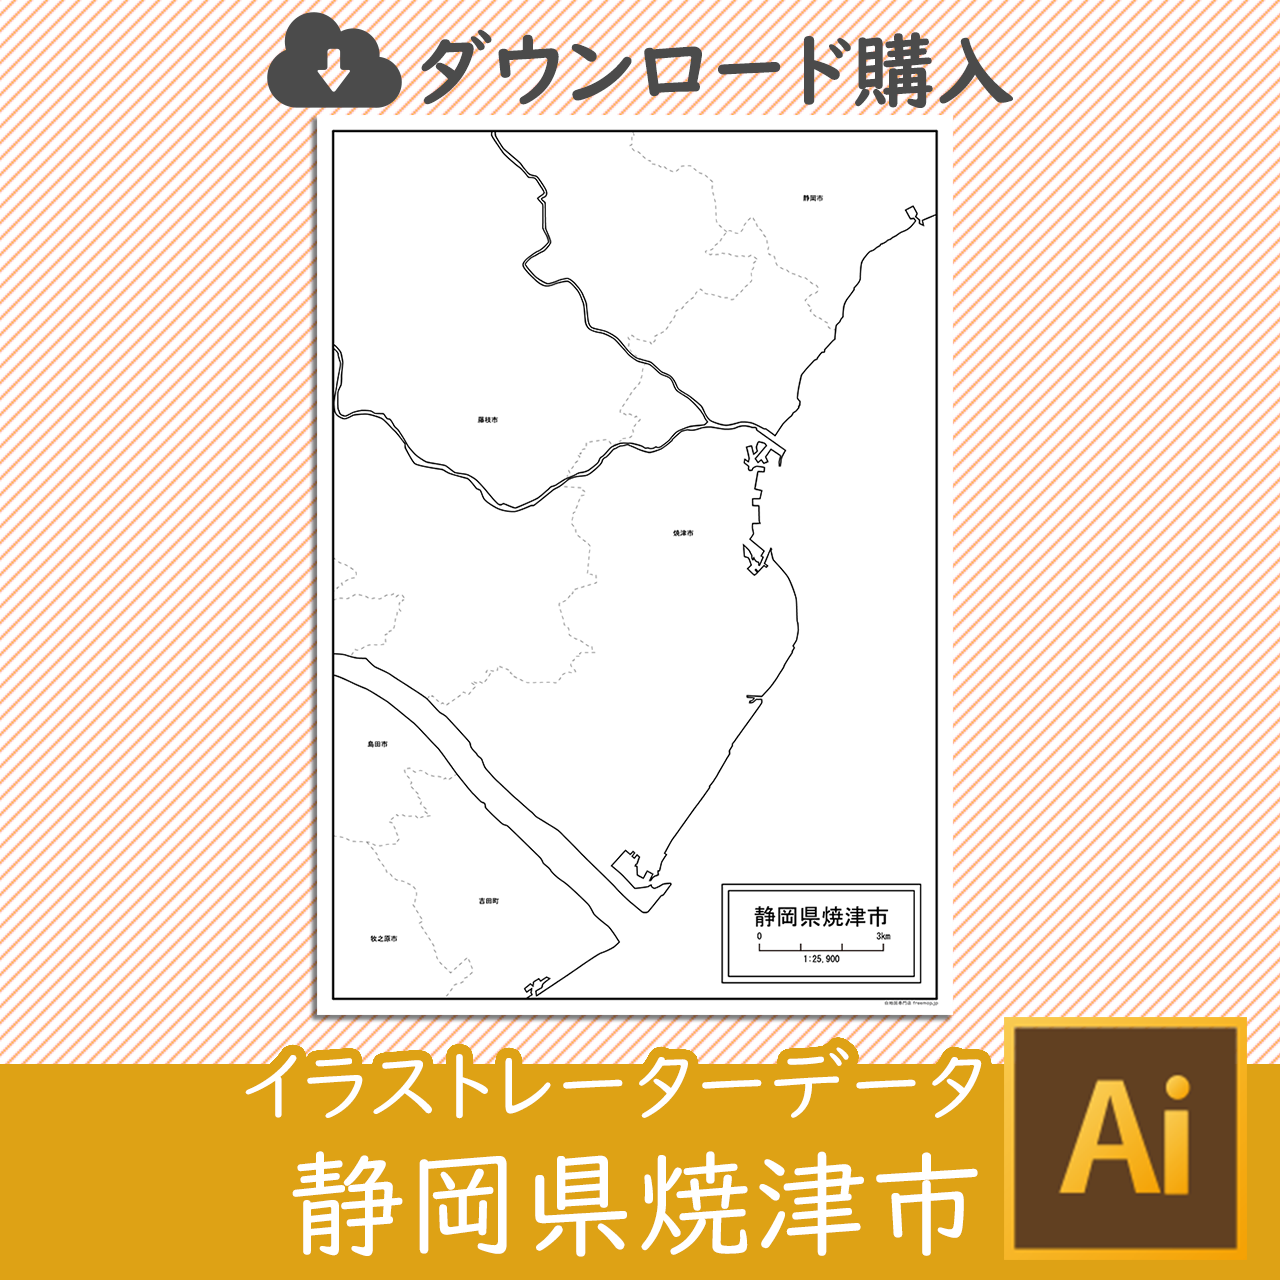 焼津市のaiデータのサムネイル画像